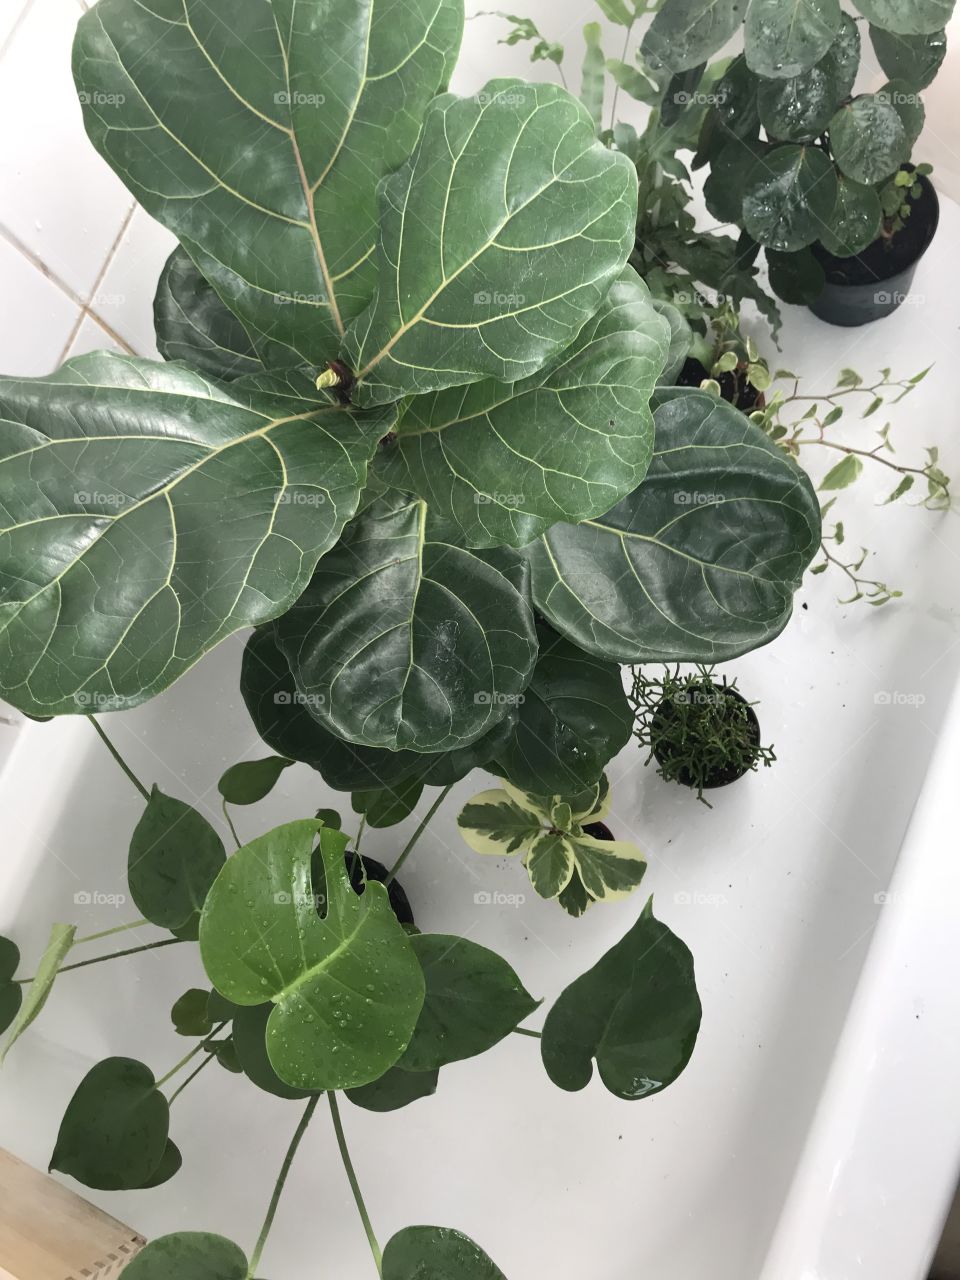 Plant bath